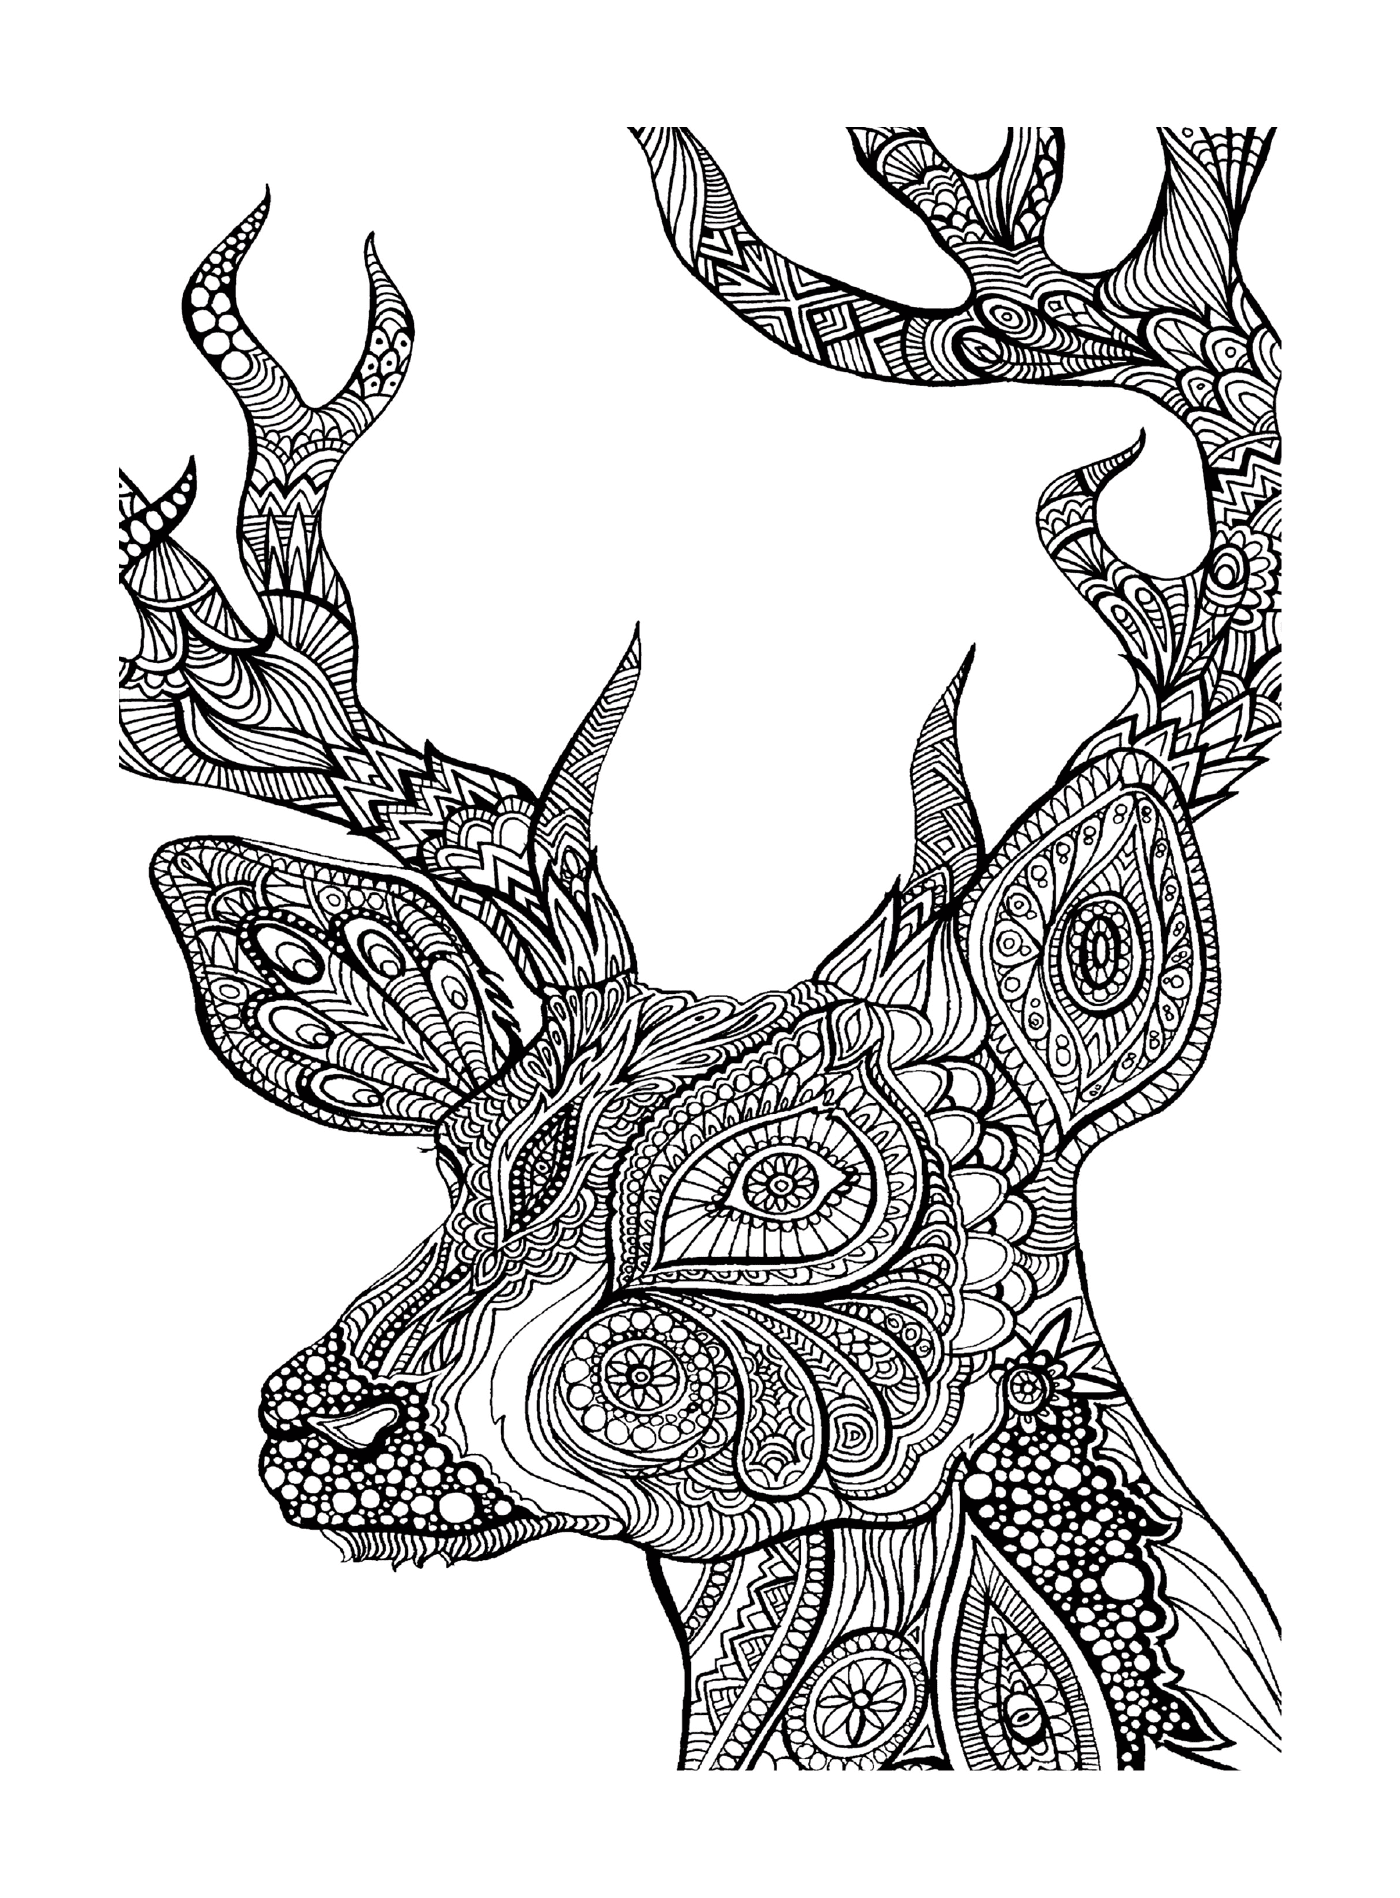  La cabeza de un ciervo 